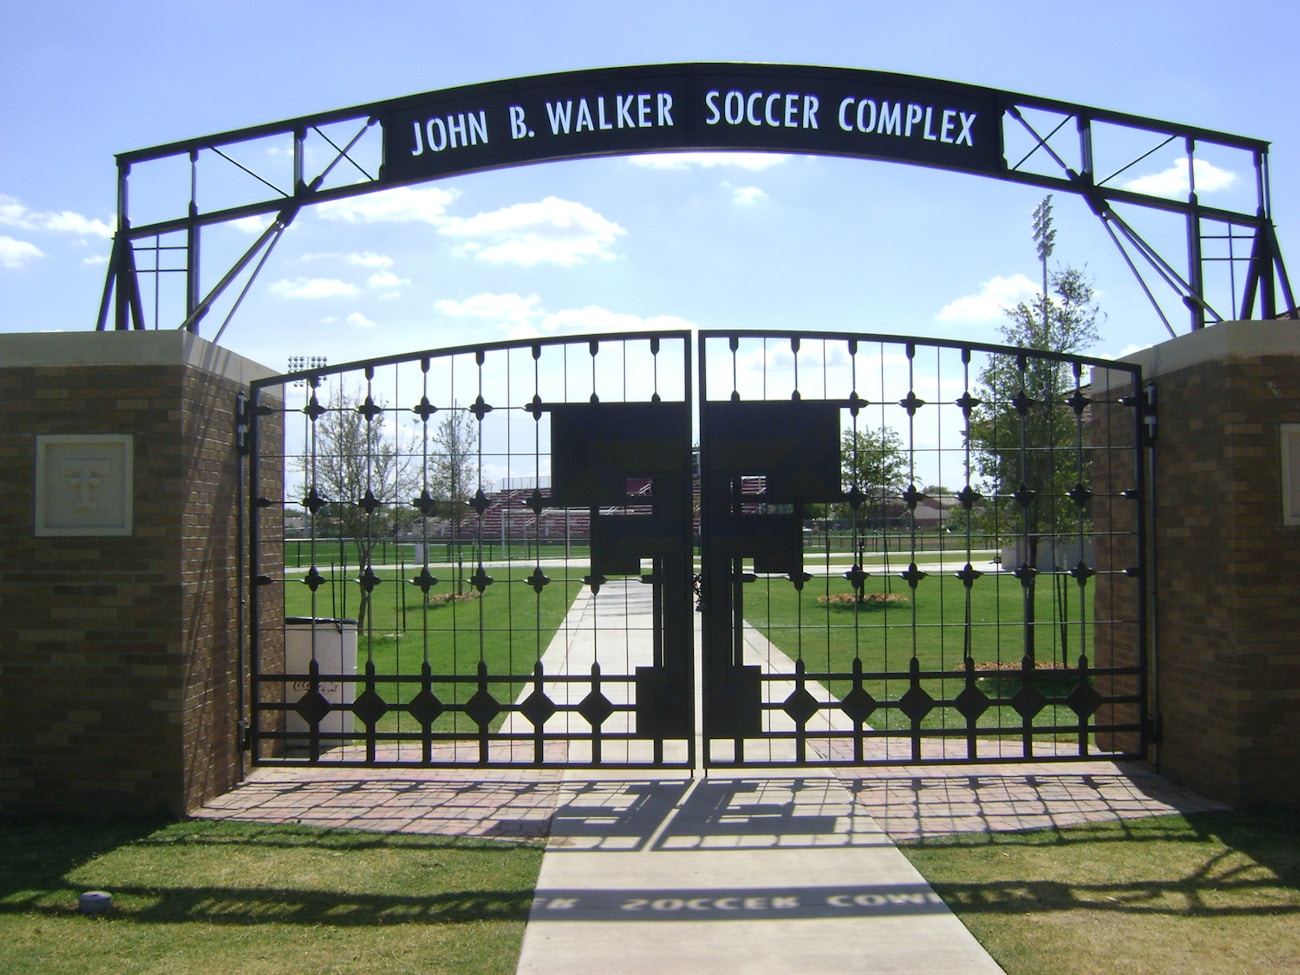                         John B. Walker Soccer
                    